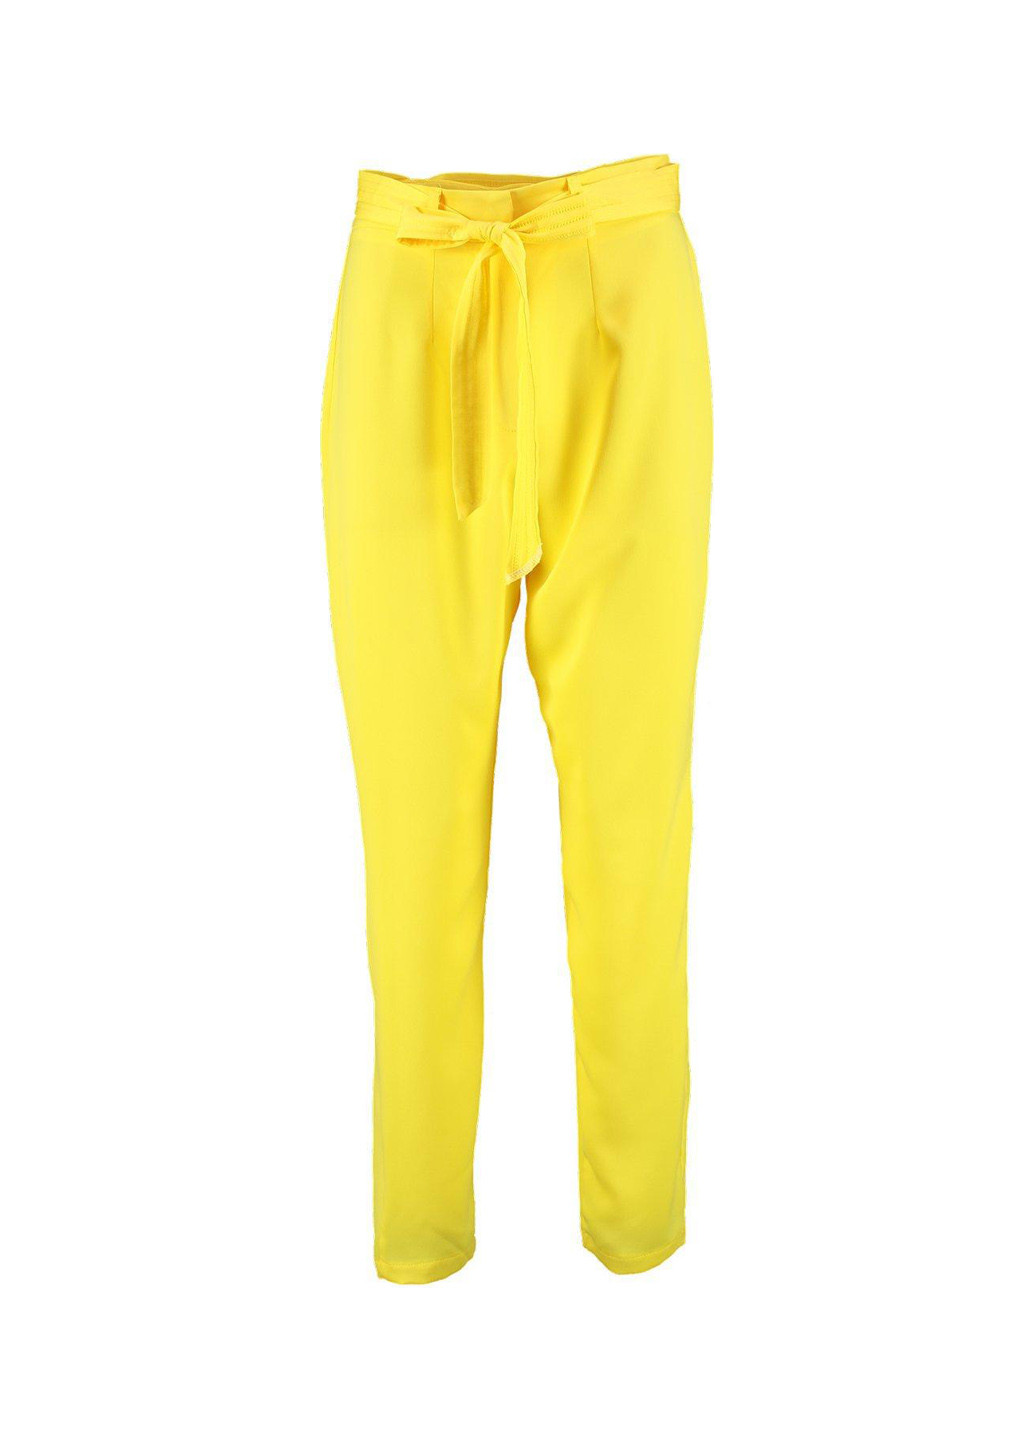 Желтые кэжуал демисезонные галифе брюки Boohoo